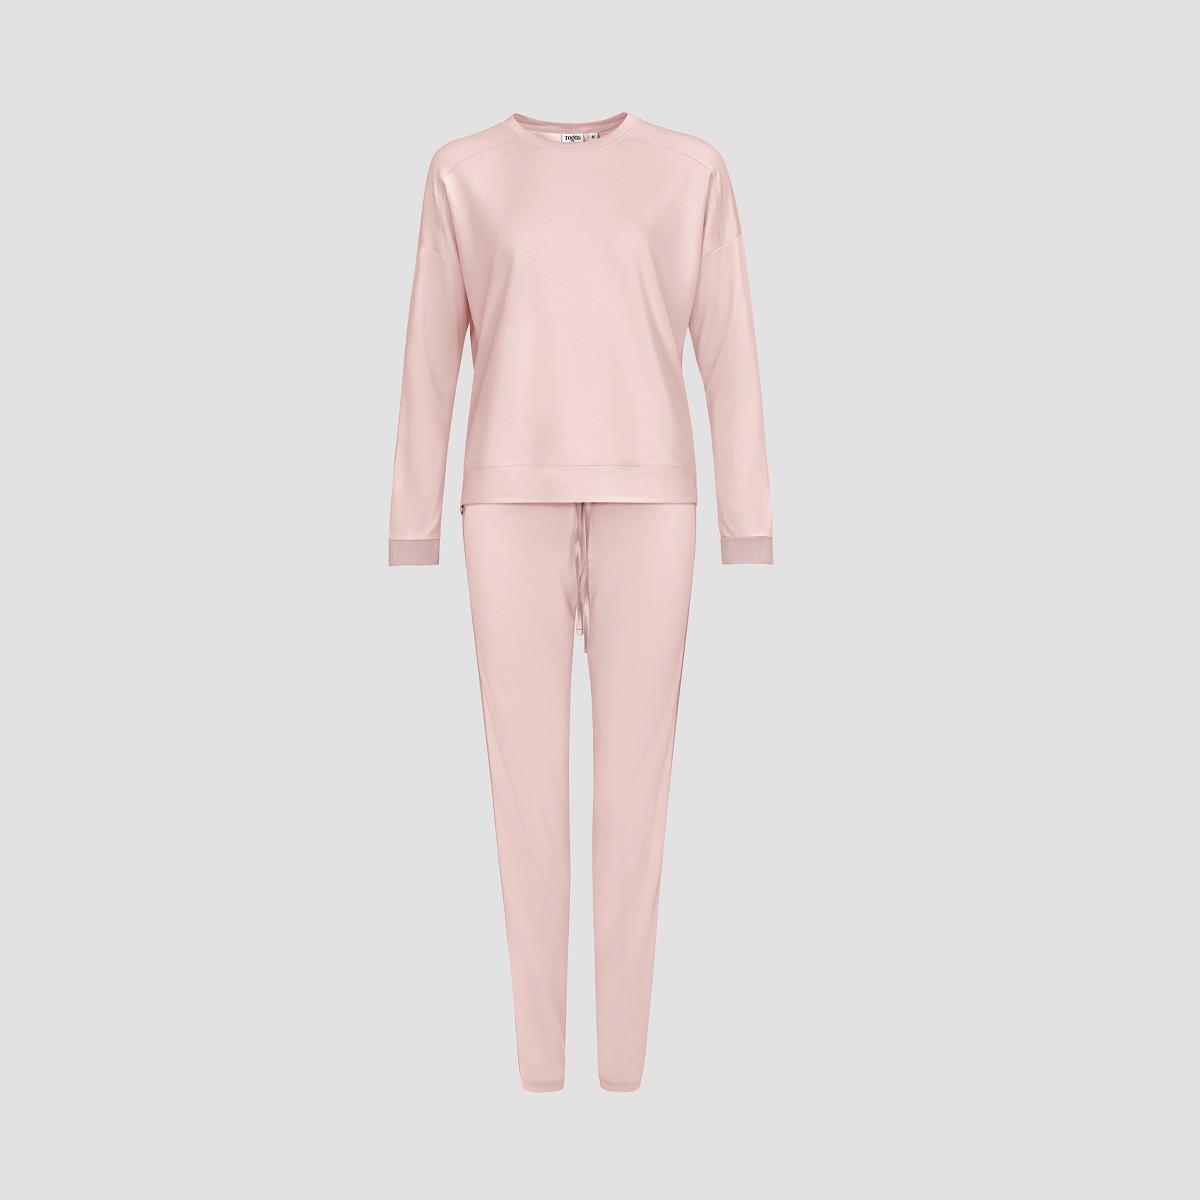 Пижама Togas Рене розовая женская пижама lomber